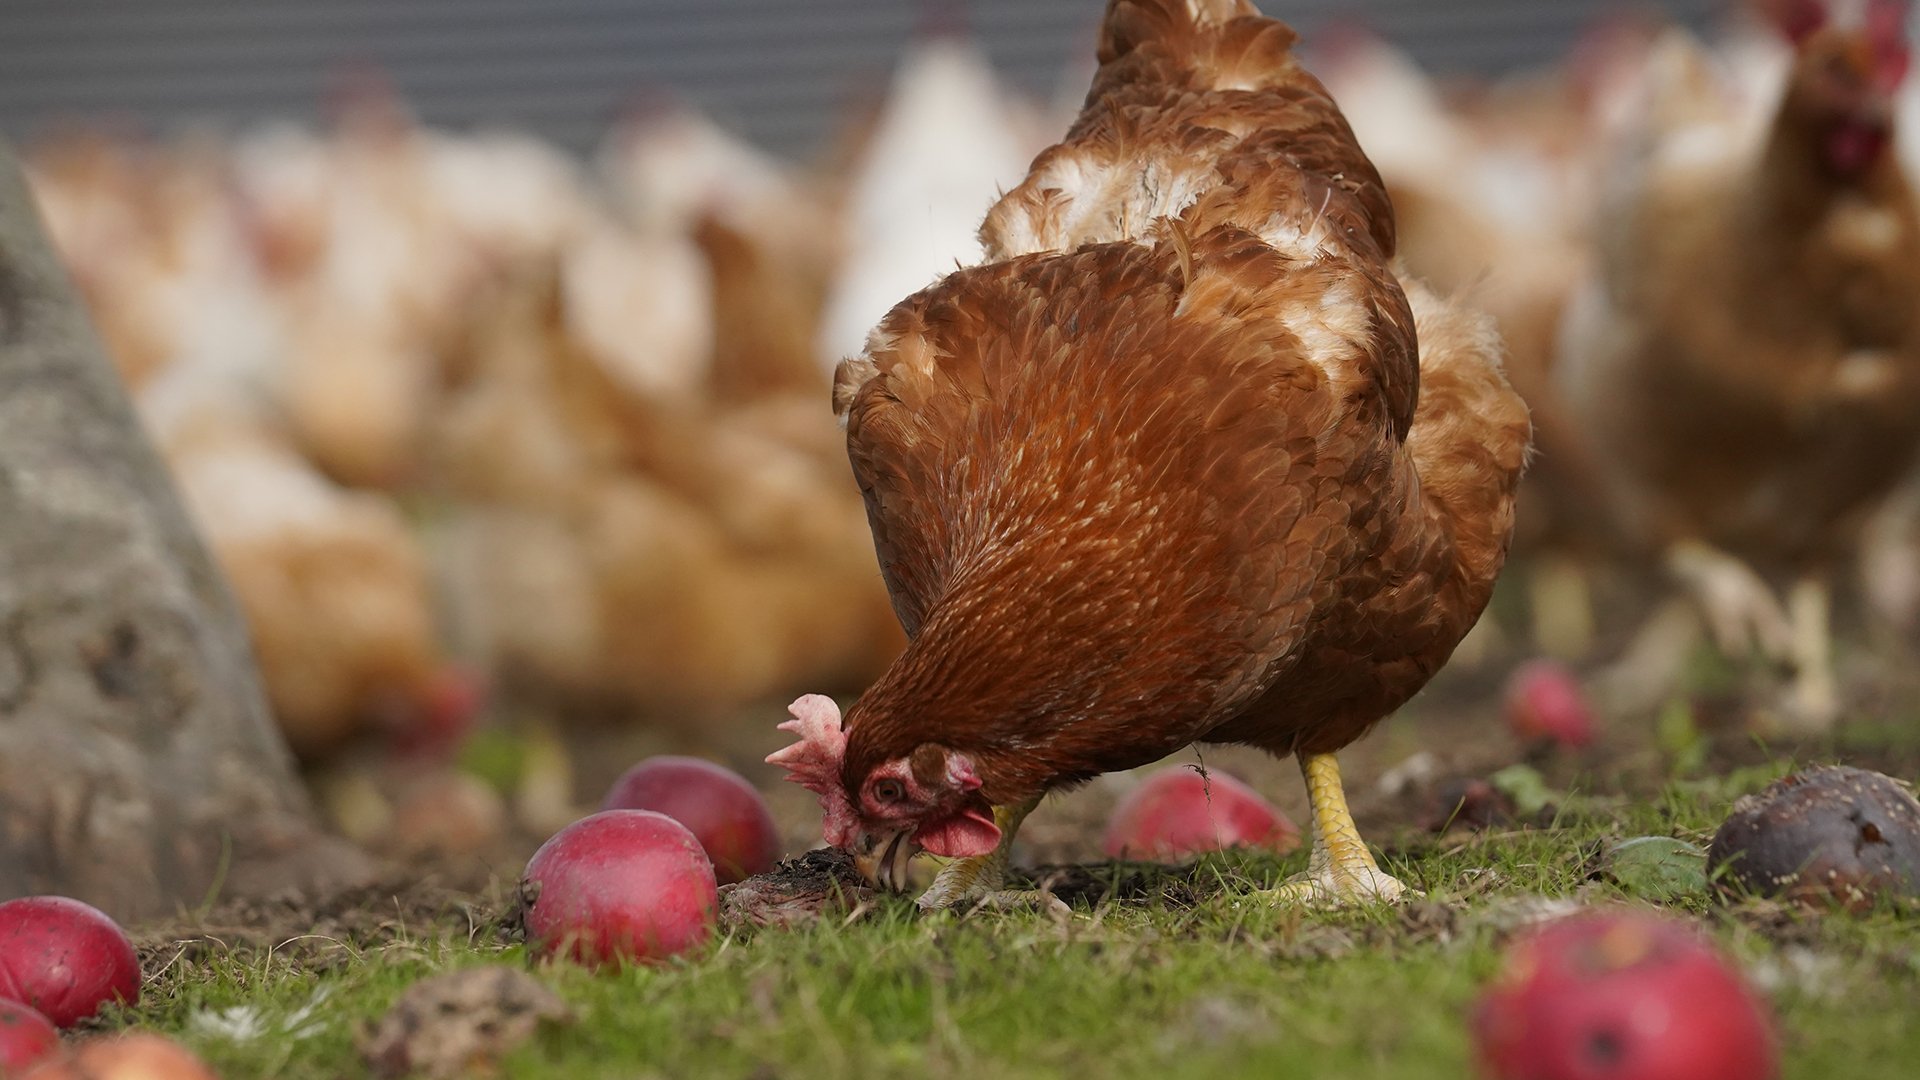 Hos Rokkedahl Foods har de høner og haner, der er forældre til slagtekyllinger i produktionen, også levet et liv i frihed.